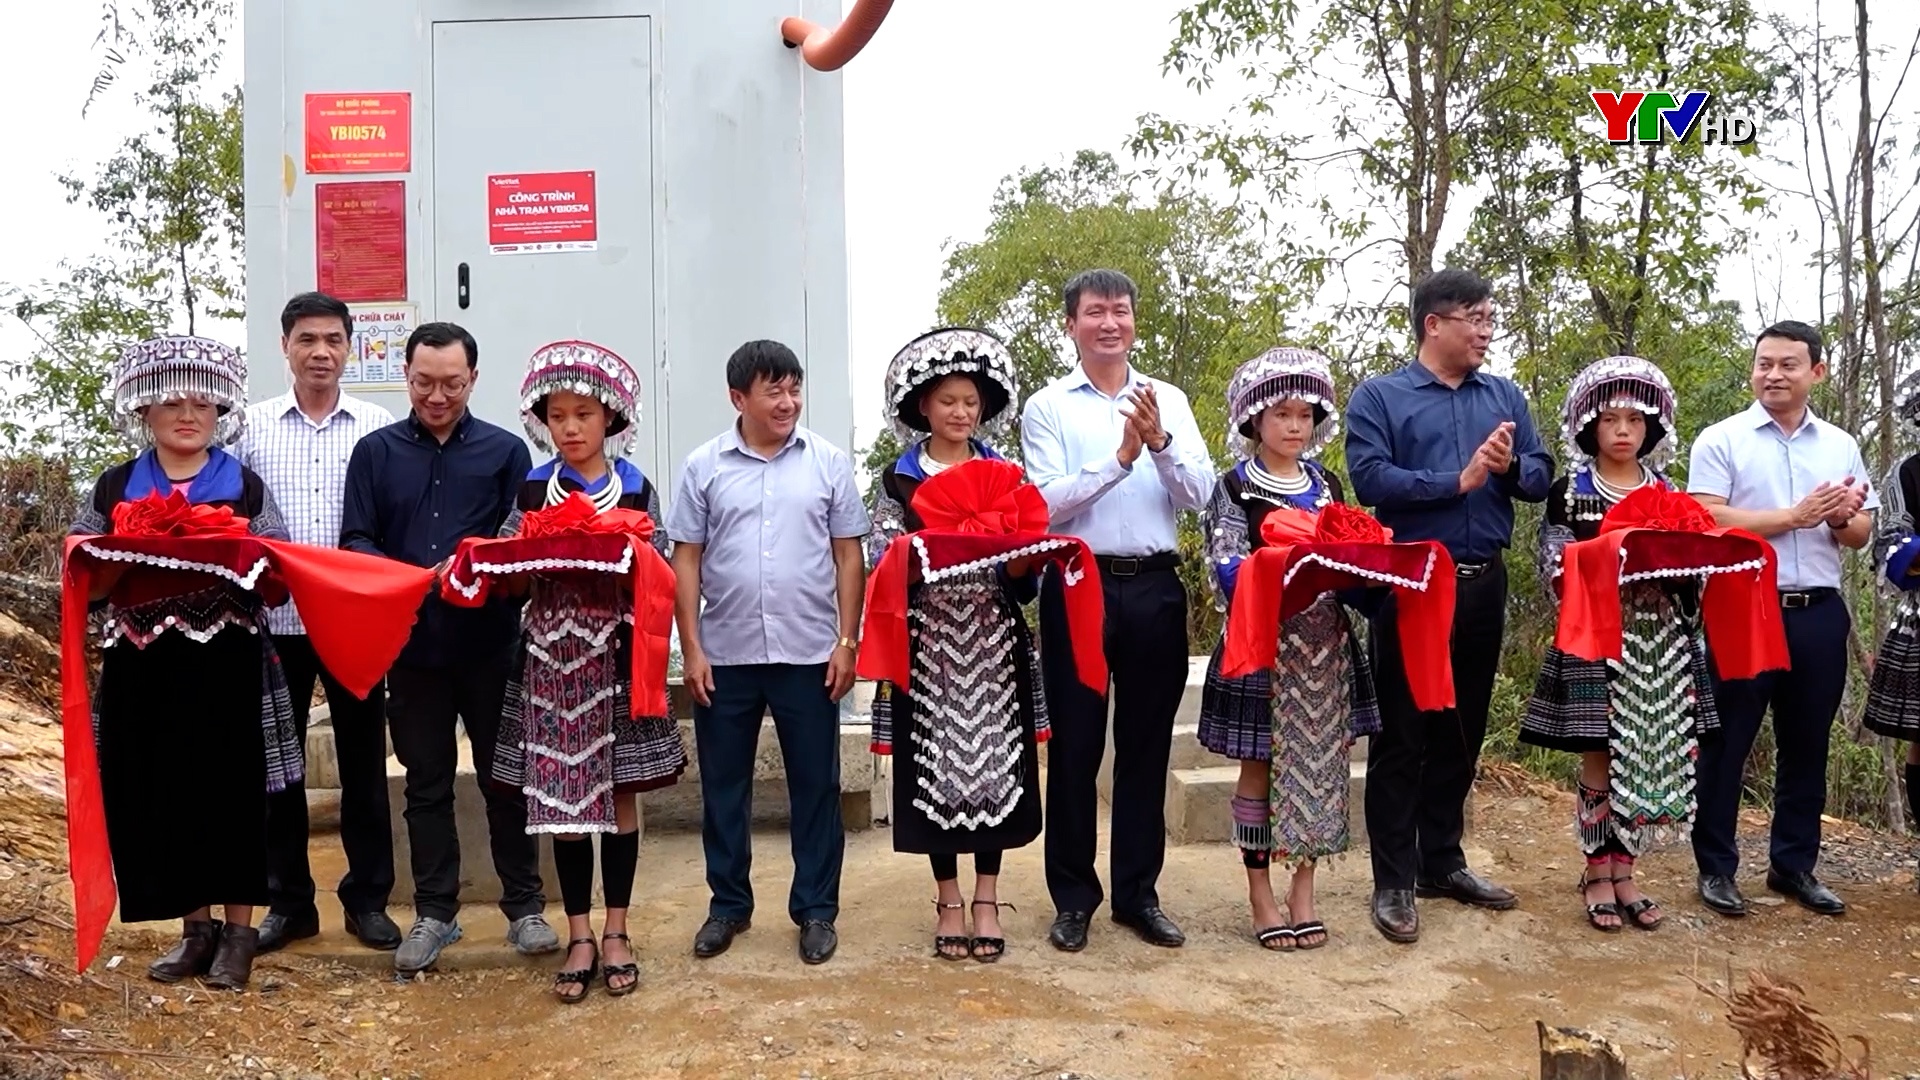 Đồng chí Chủ tịch UBND tỉnh Trần Huy Tuấn dự Lễ khai trương trạm phát sóng di động của Viettel tại xã Chế Tạo, huyện Mù Cang Chải